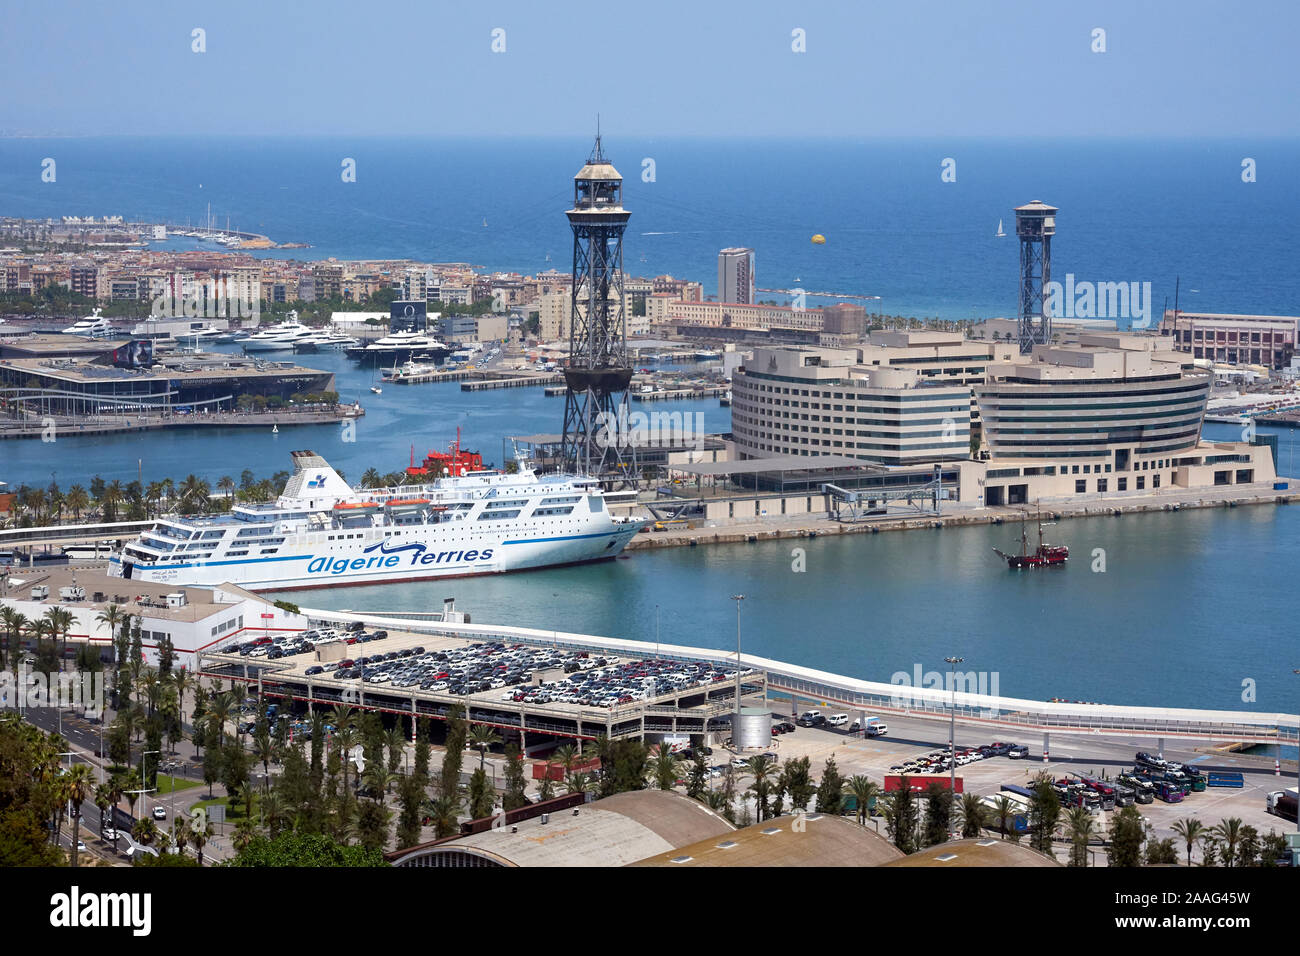 Un ferry de la compañía naviera algerie ferries en el puerto de Barcelona  Fotografía de stock - Alamy